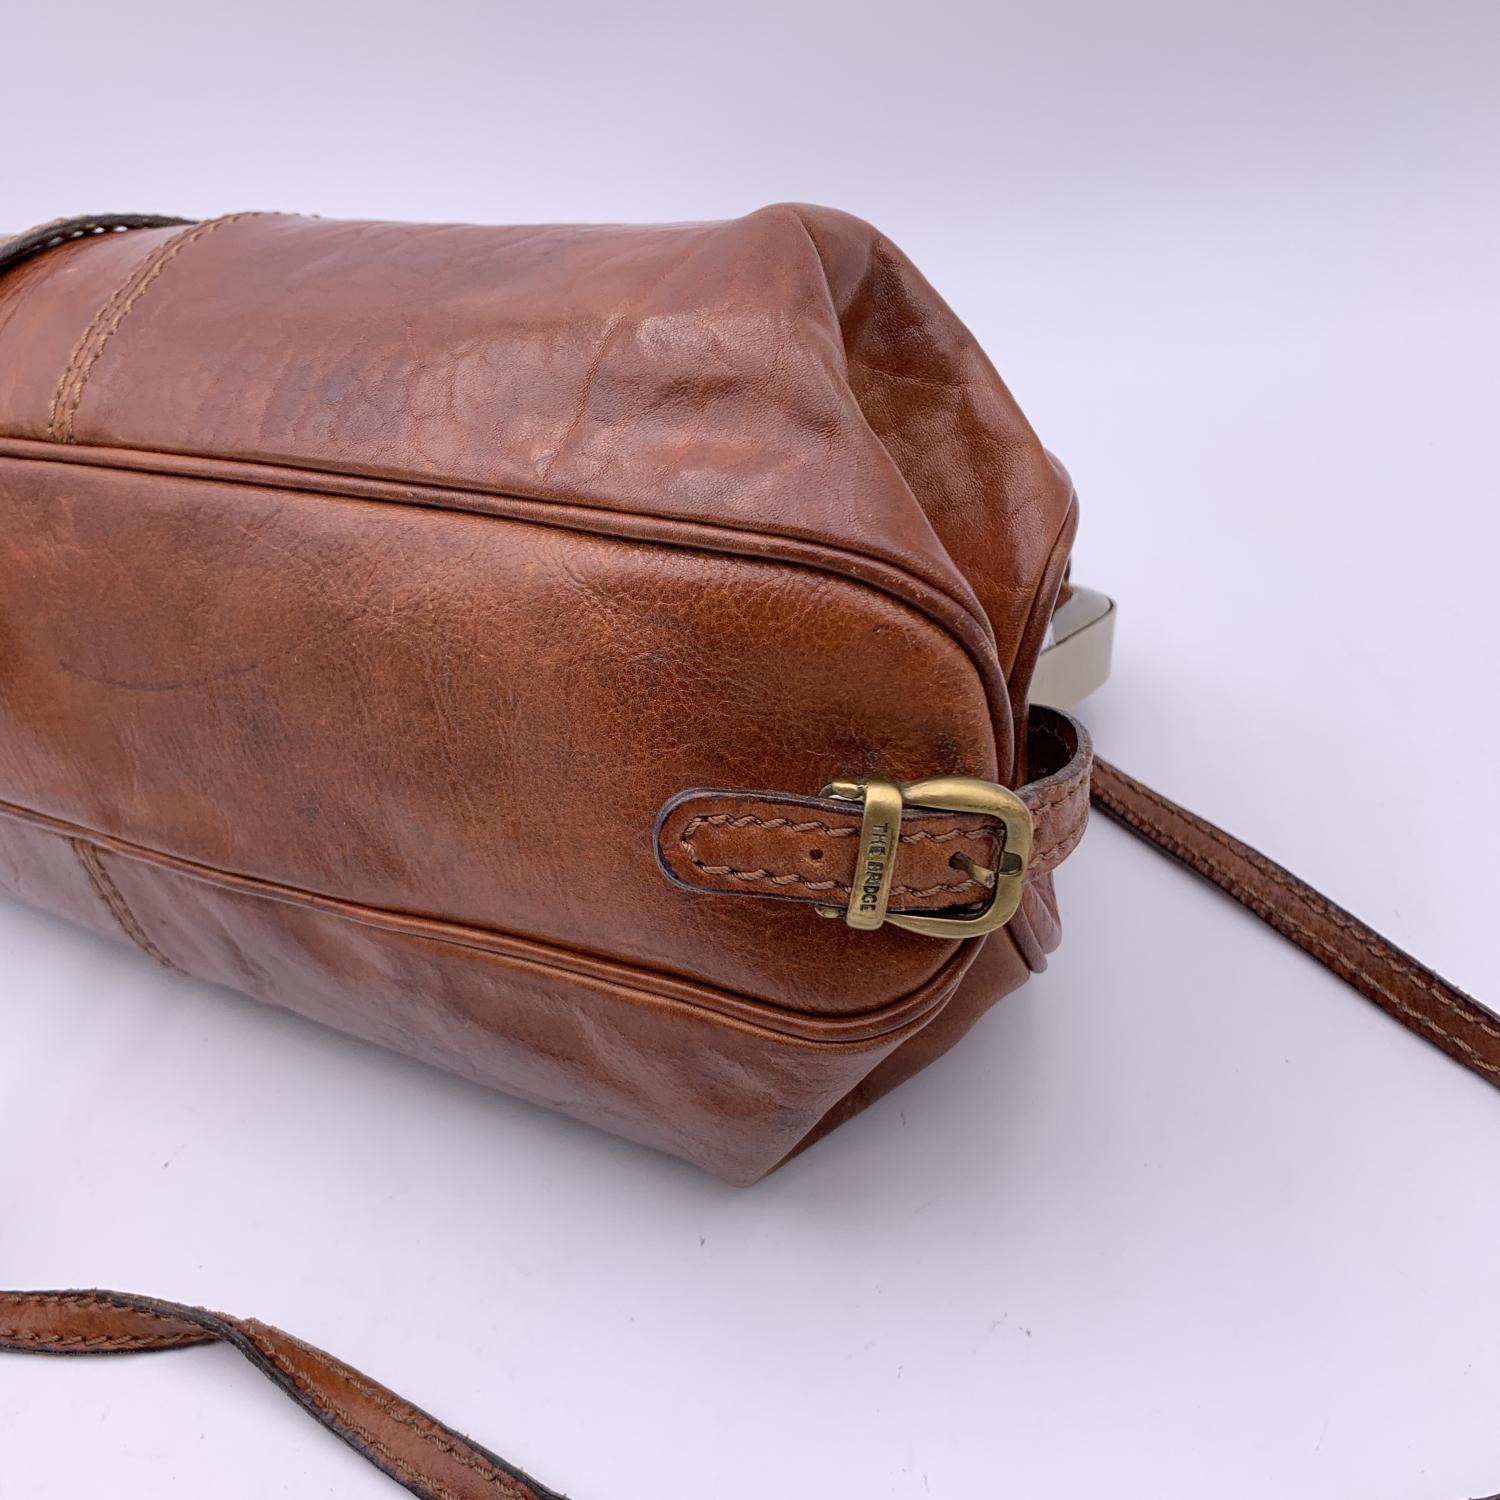 The Bridge Vintage Brown Leather Doctor Bag Satchel Handbag with Strap 3